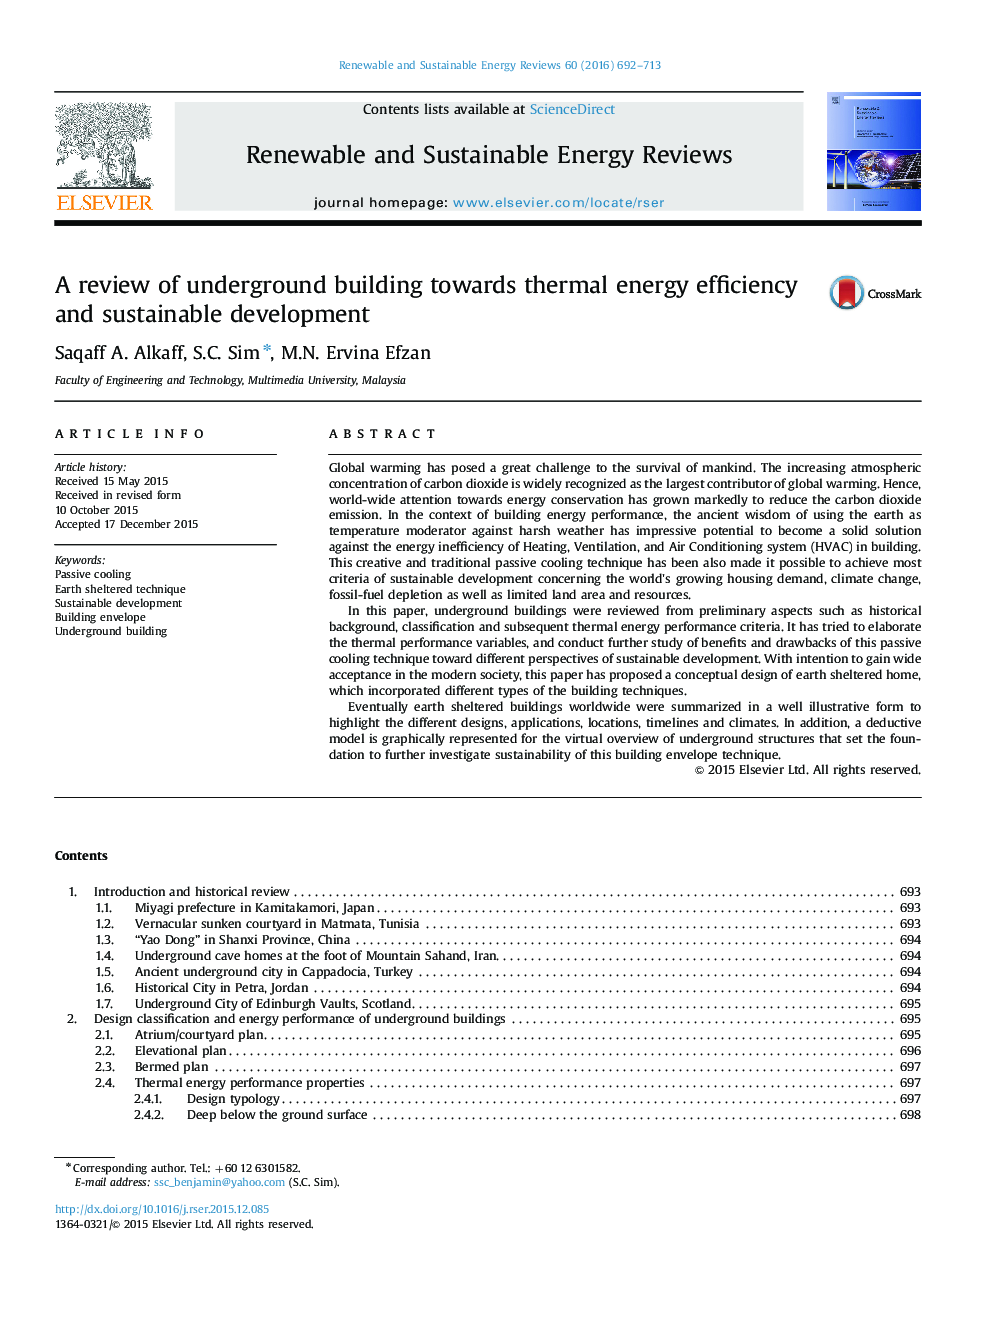 بررسی ساختمان زیرزمینی در برابر بهره وری انرژی حرارتی و توسعه پایدار 